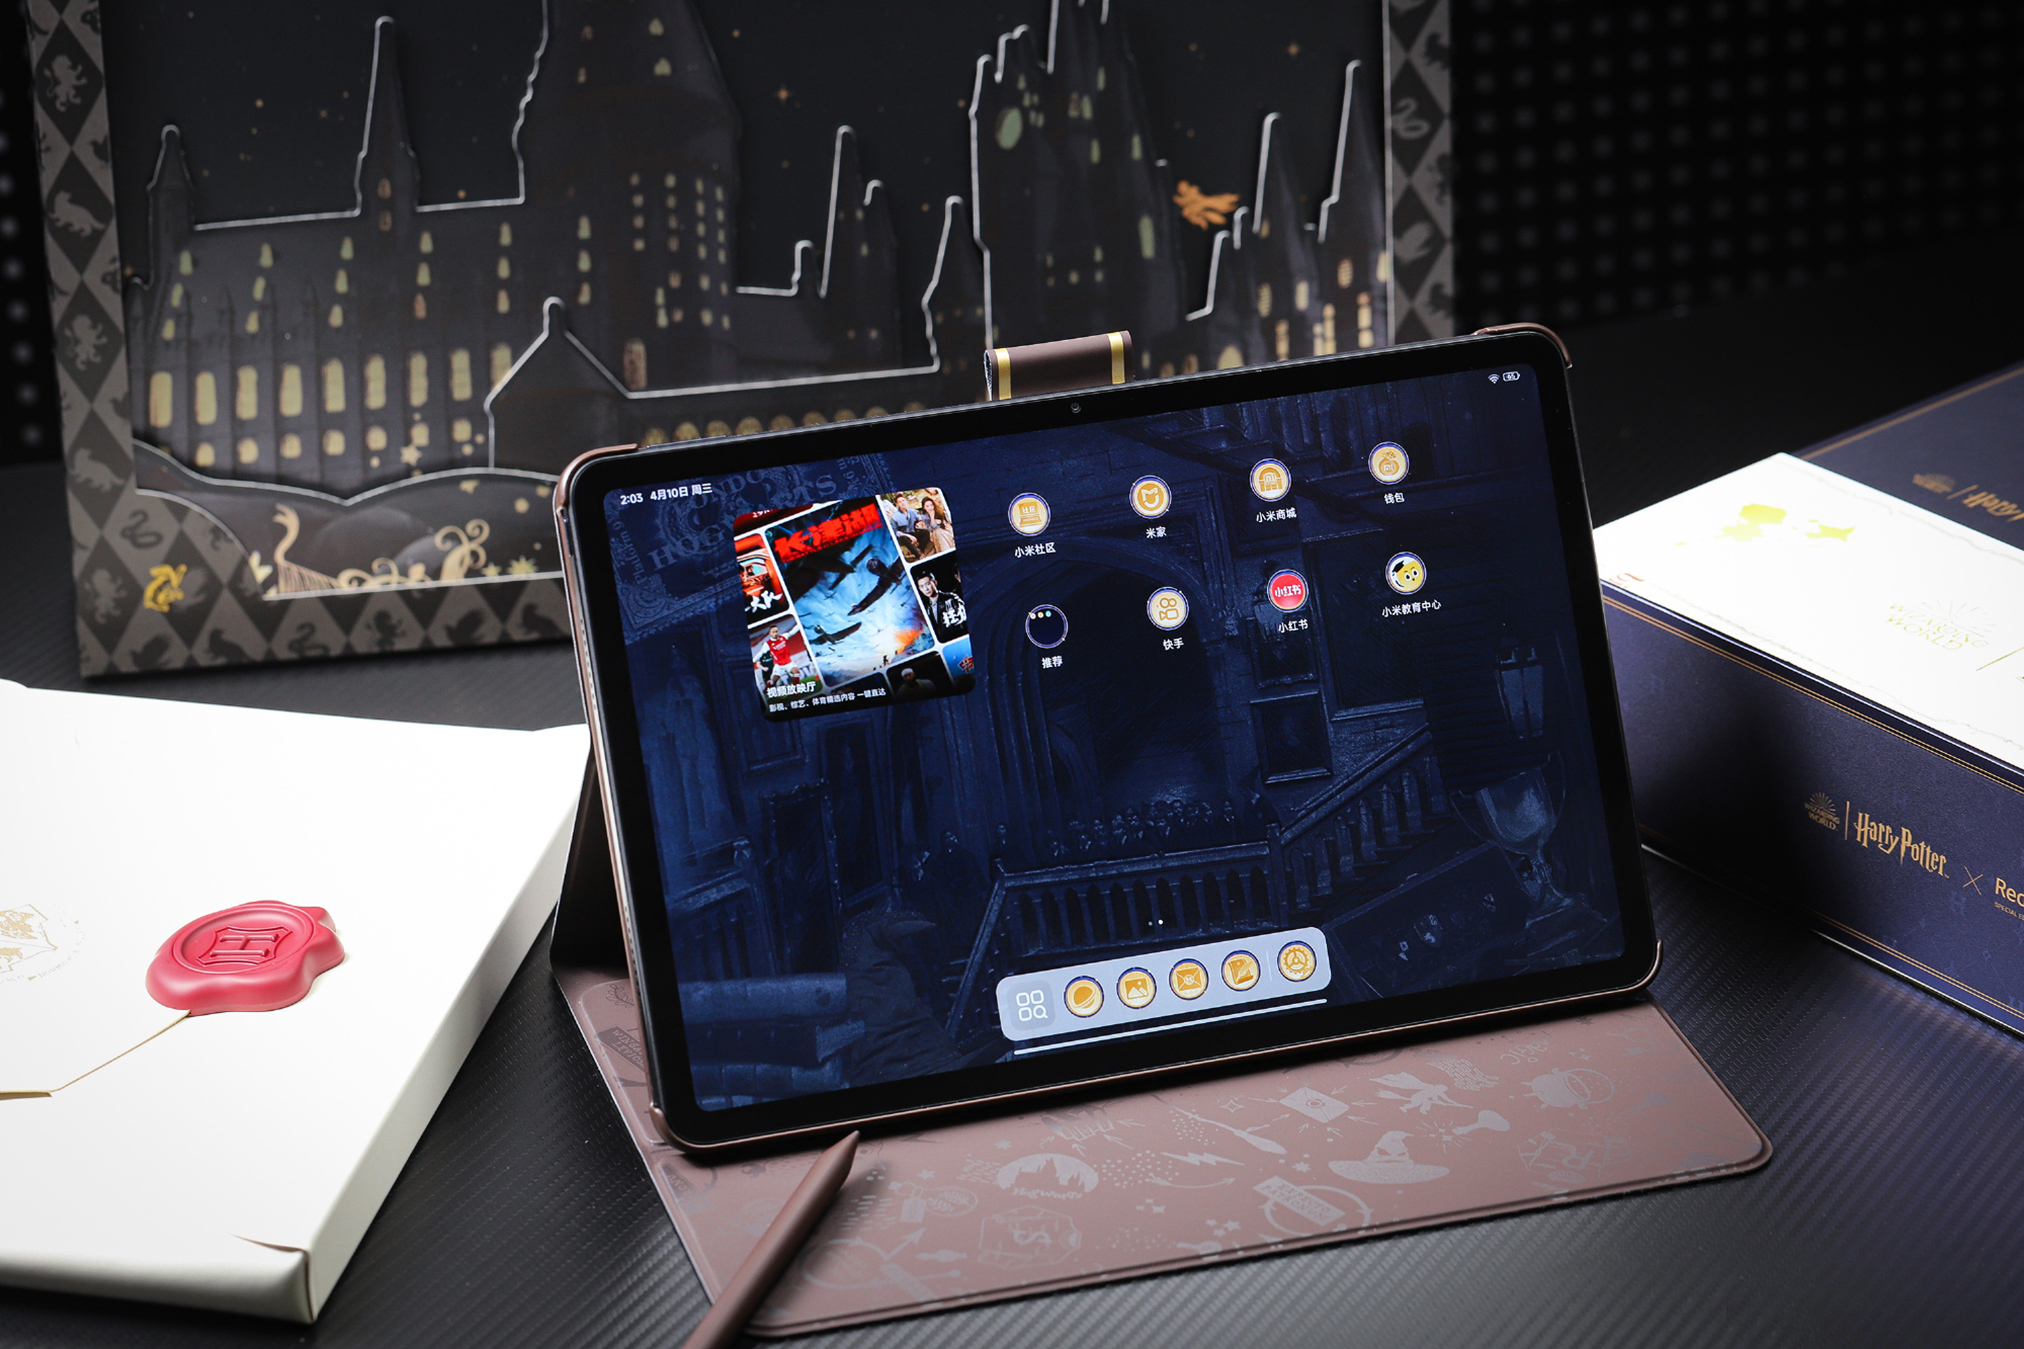 Cận cảnh máy tính bảng 12 inch giá rẻ của Xiaomi: Thiết kế đẹp như iPad, có cả bản Harry Potter đặc biệt cho các Potterheads mà giá chỉ hơn 5 triệu đồng- Ảnh 25.